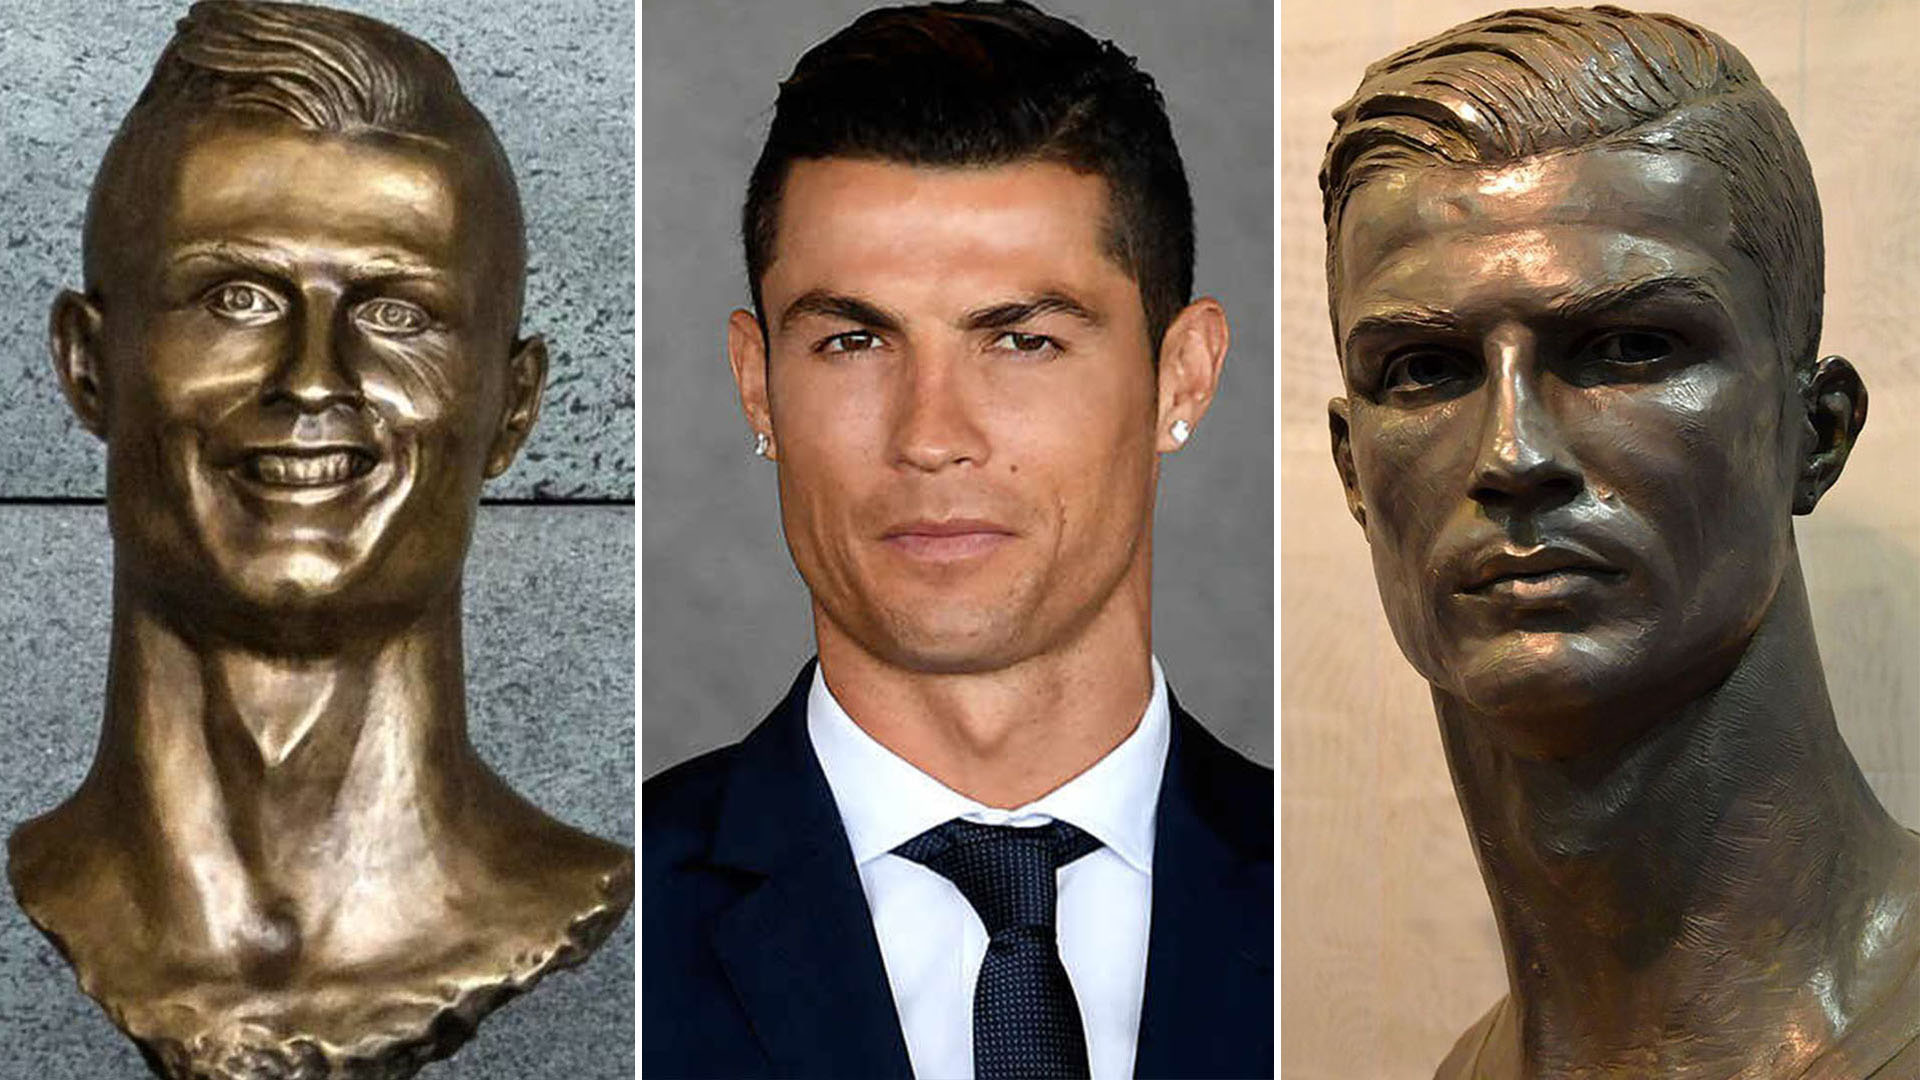 Las estatuas de Cristiano Ronaldo, Una de ellas, la de la izquierda, recibió muchas críticas. "A veces no se parecen", argumentó "el Diez"